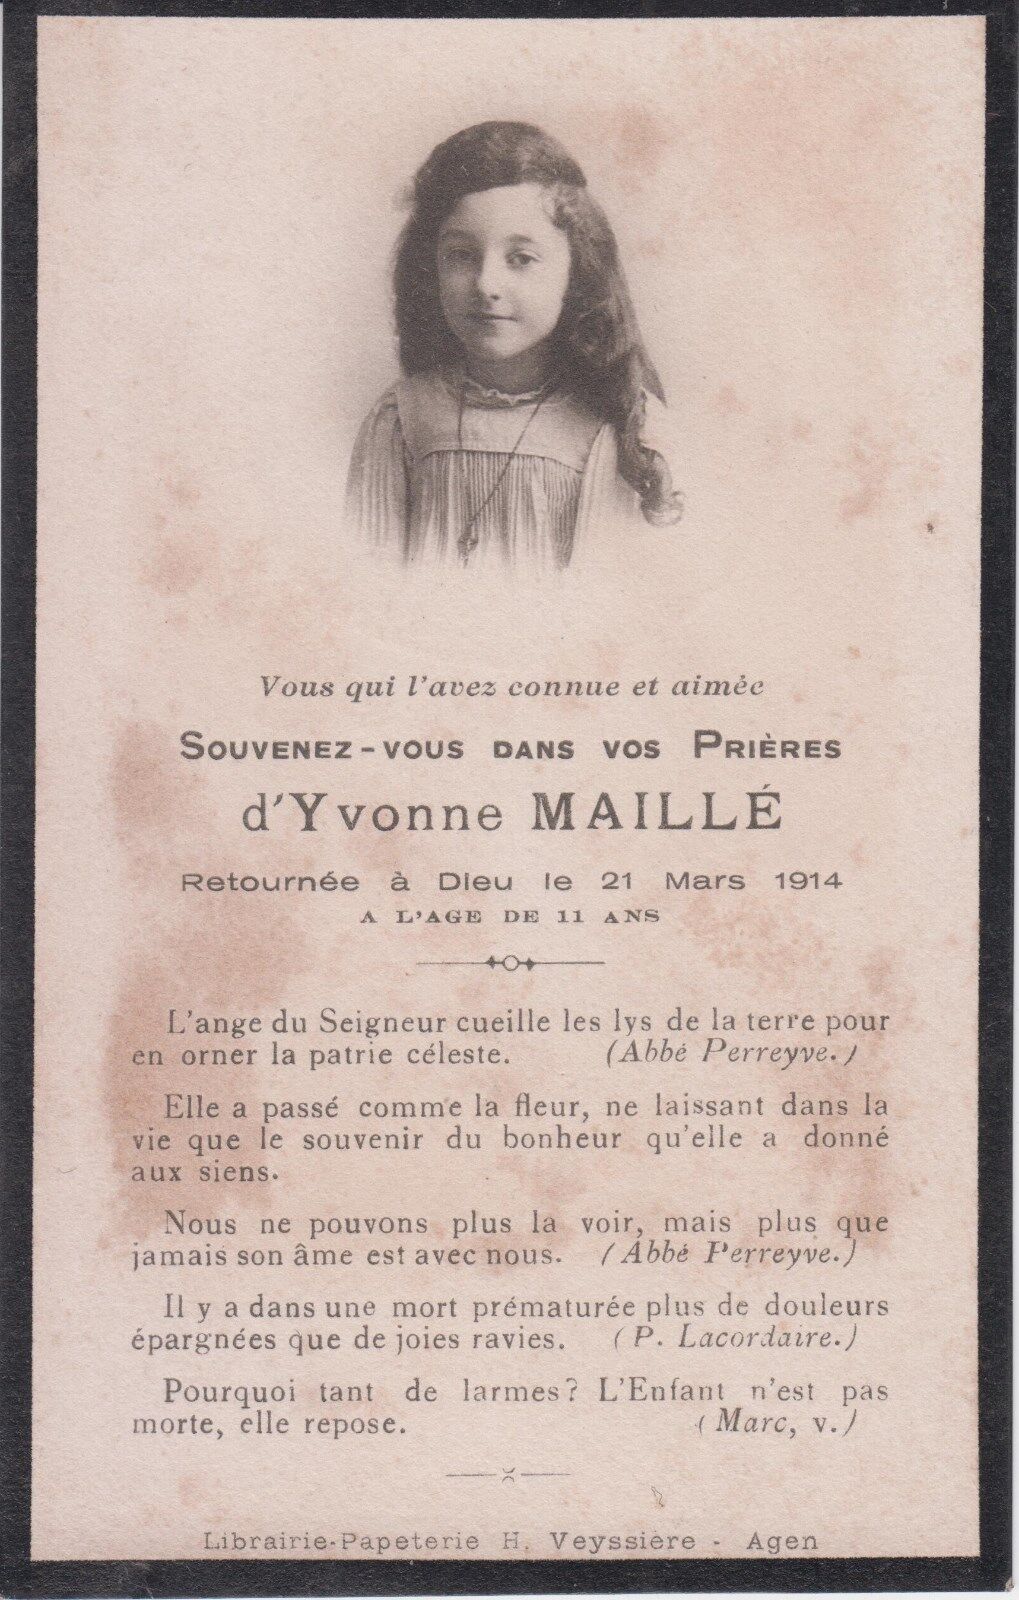 1914 - Mémento d\'Yvonne MESH - Agen (?) - Lot-et-Garonne.